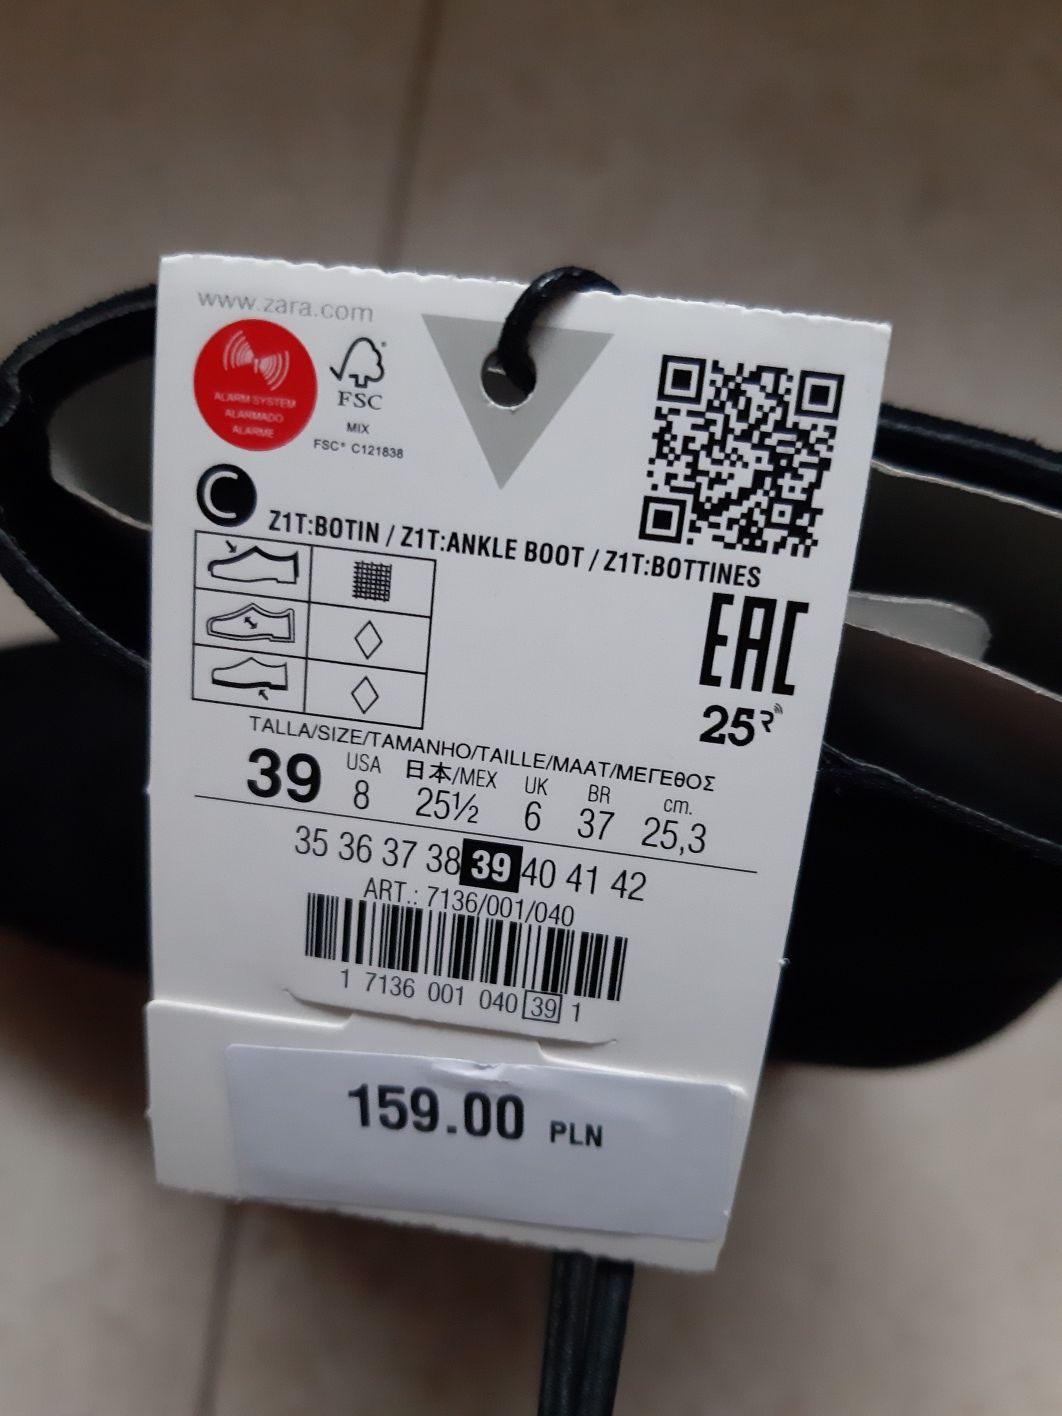 Buty kozaki botki Zara Woman 39 obcas słupek imitacja zamsz czarne mus